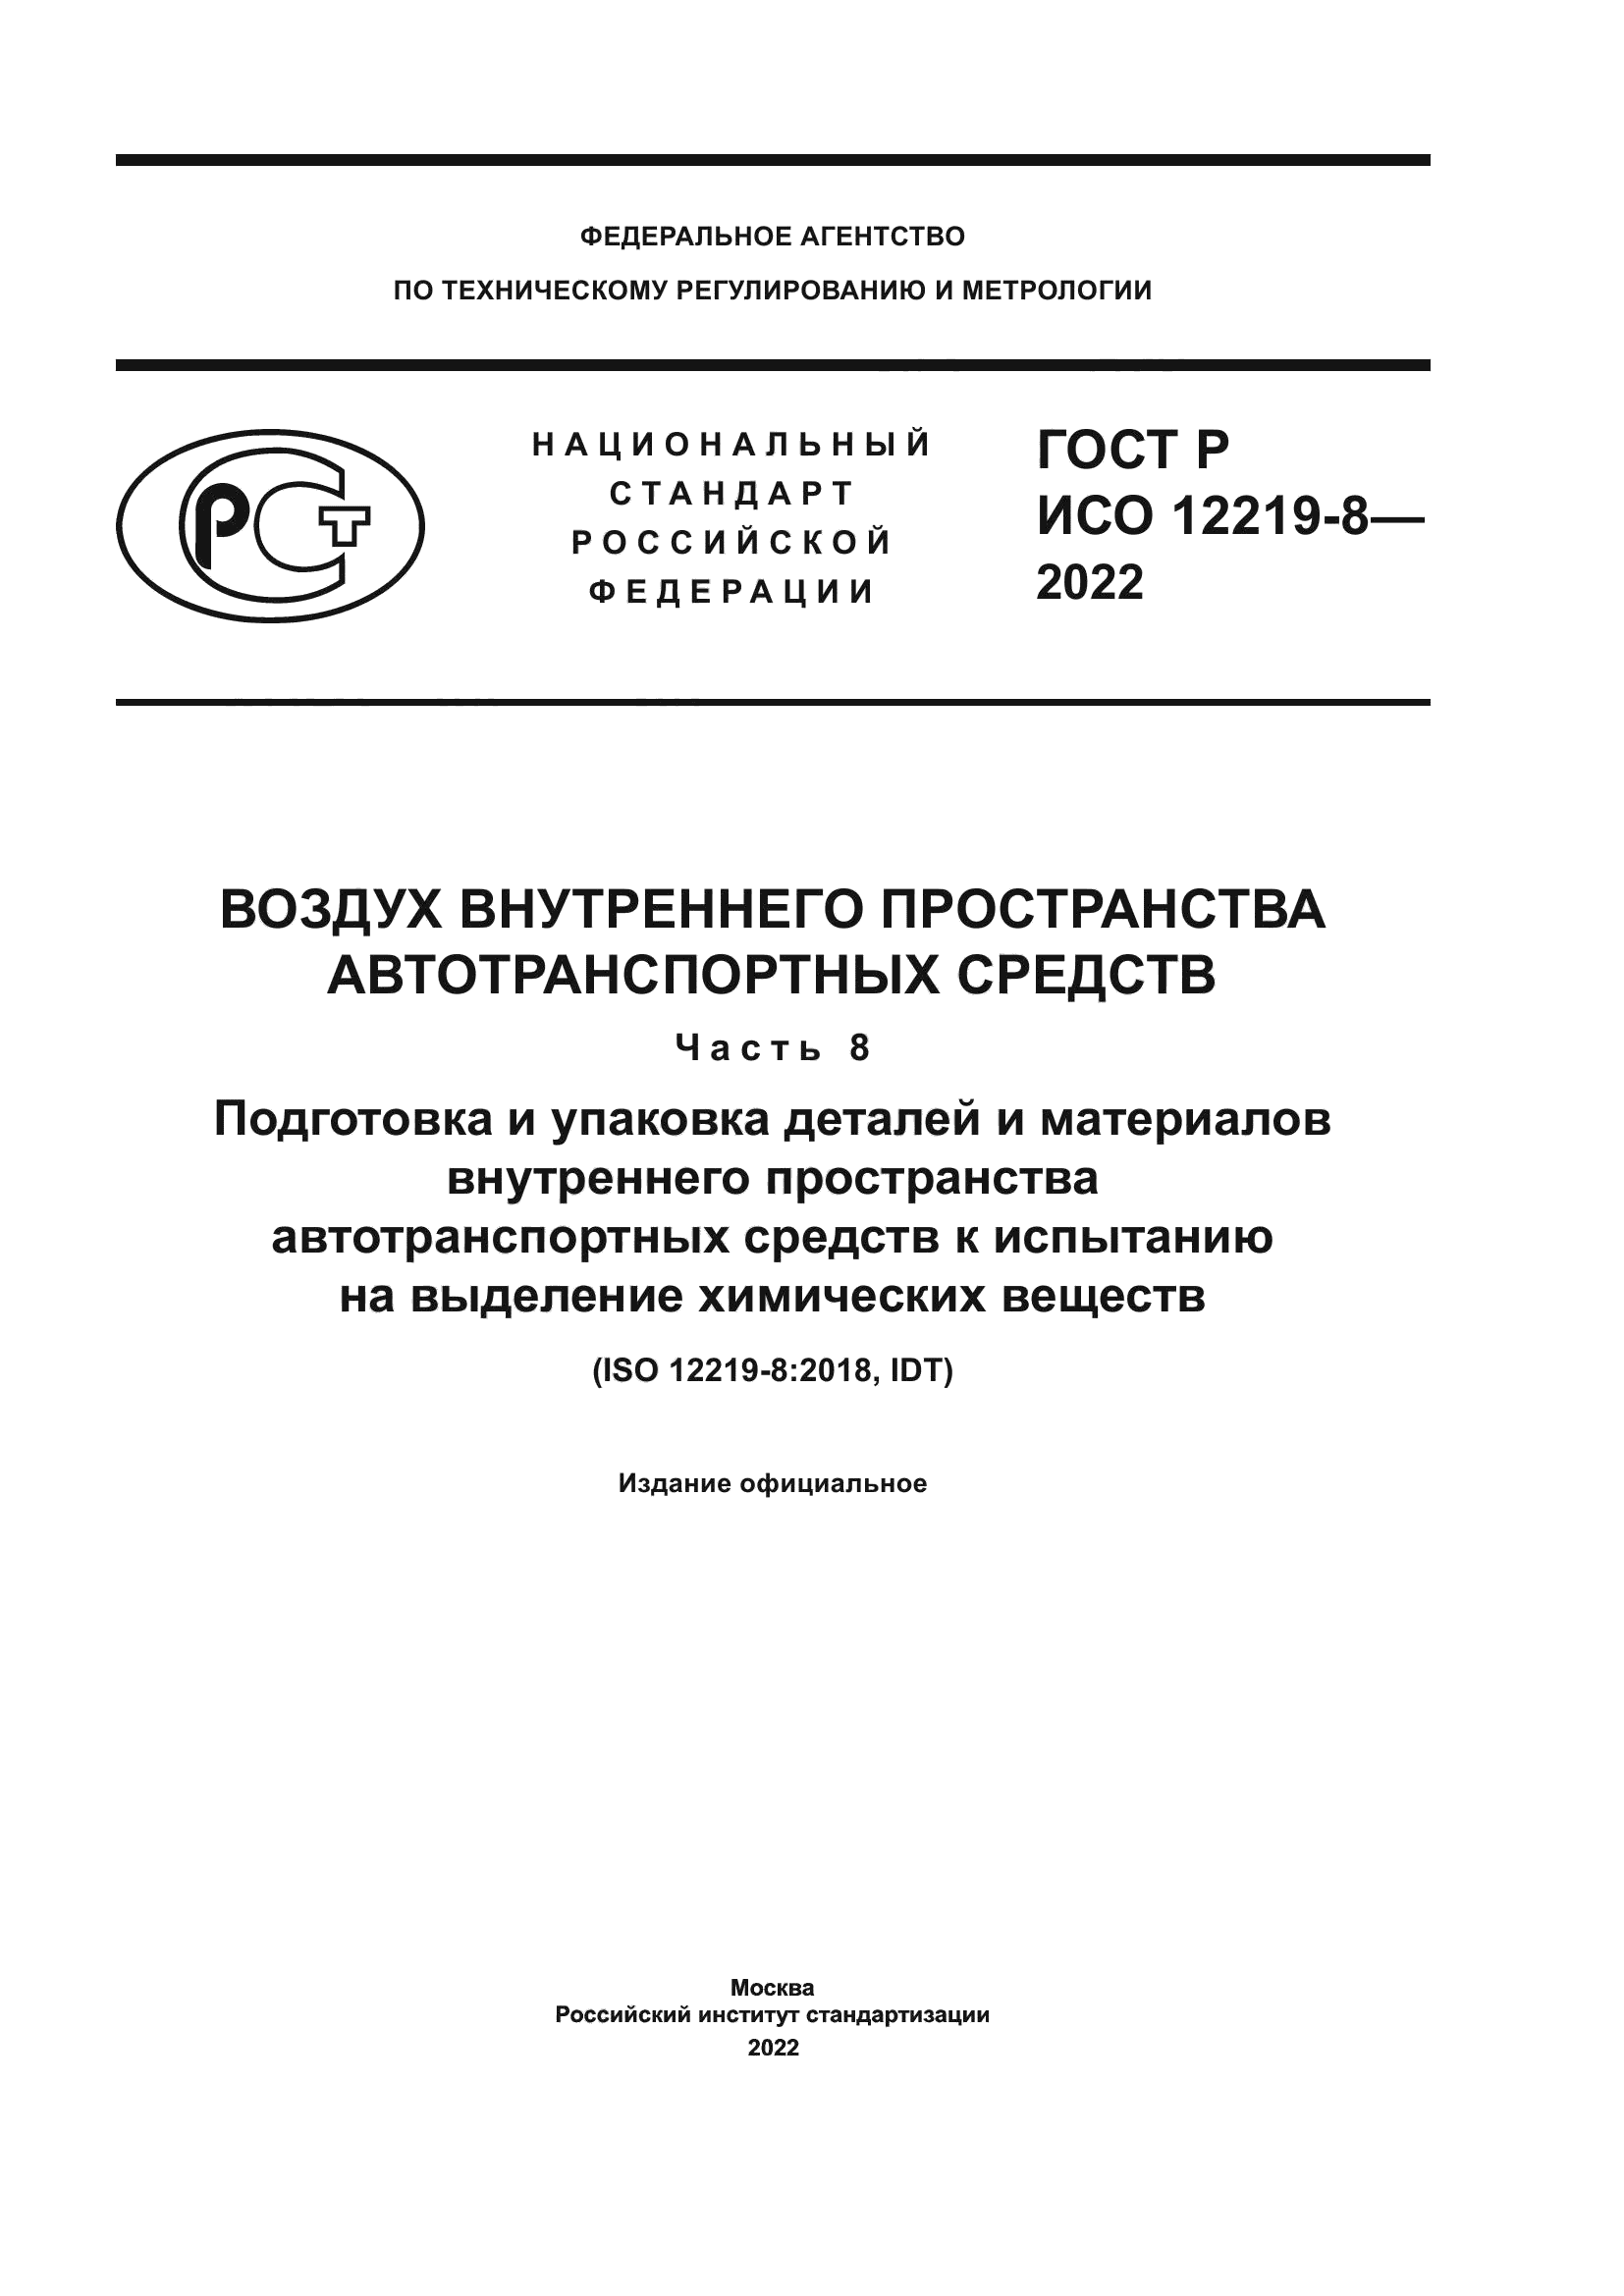 ГОСТ Р ИСО 12219-8-2022